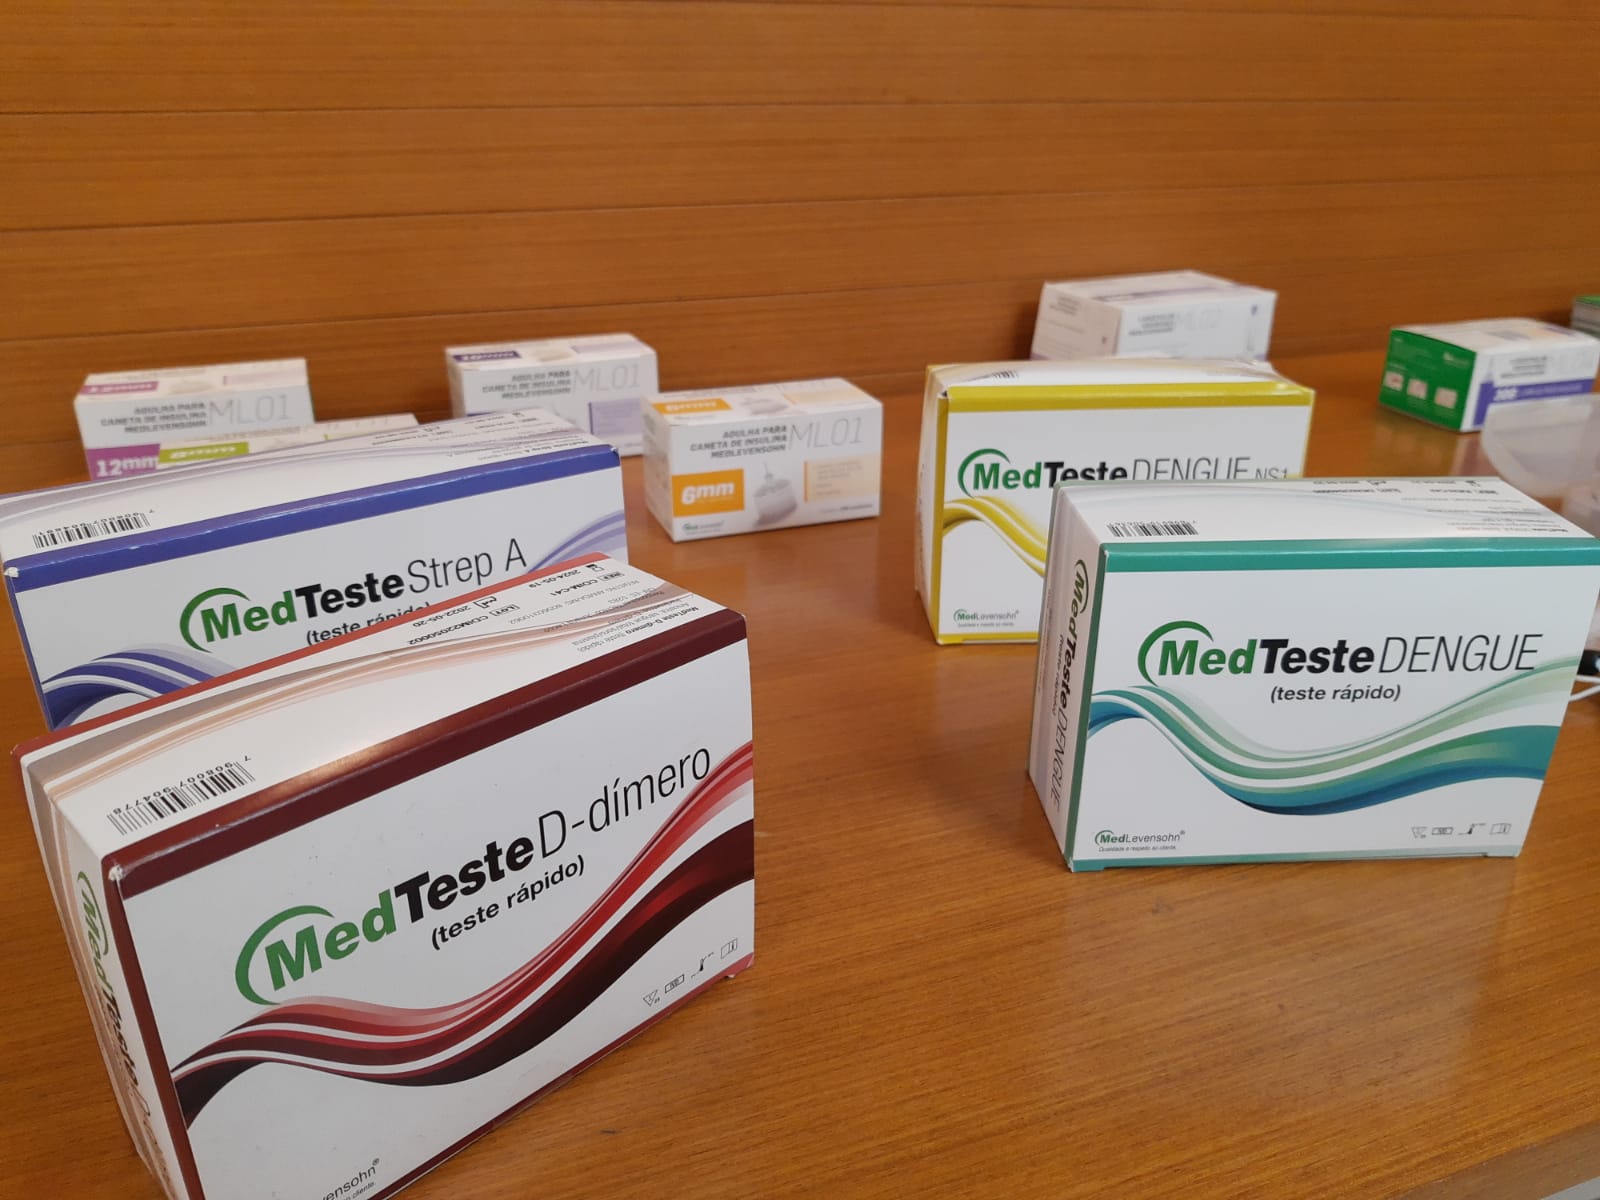 Ascoferj orienta sobre adequação à norma que autoriza testes rápidos em farmácias